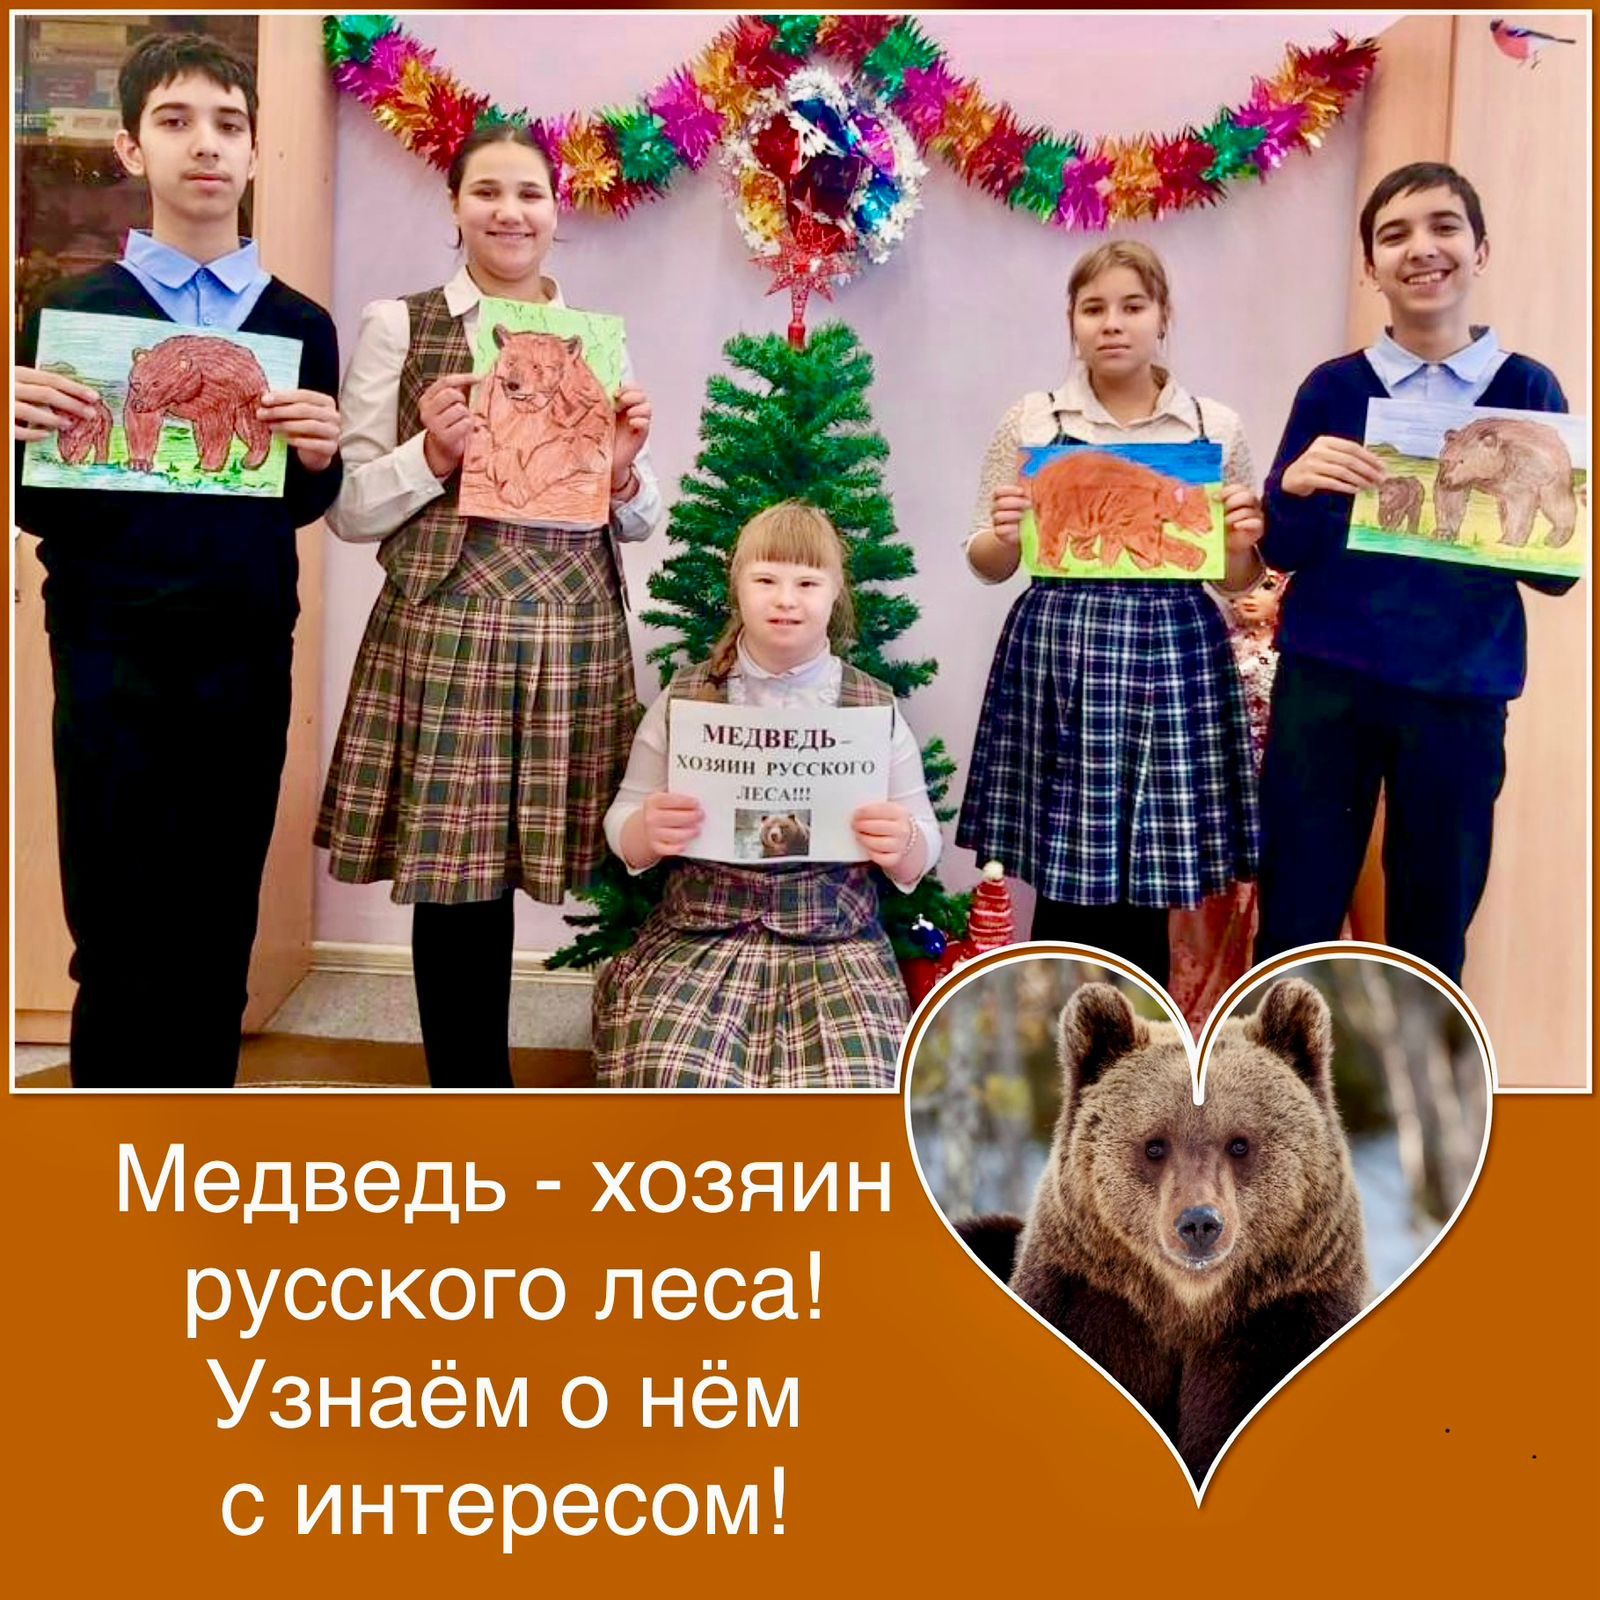 Ежегодно 13 декабря отмечается российский экологический праздник - День медведя.